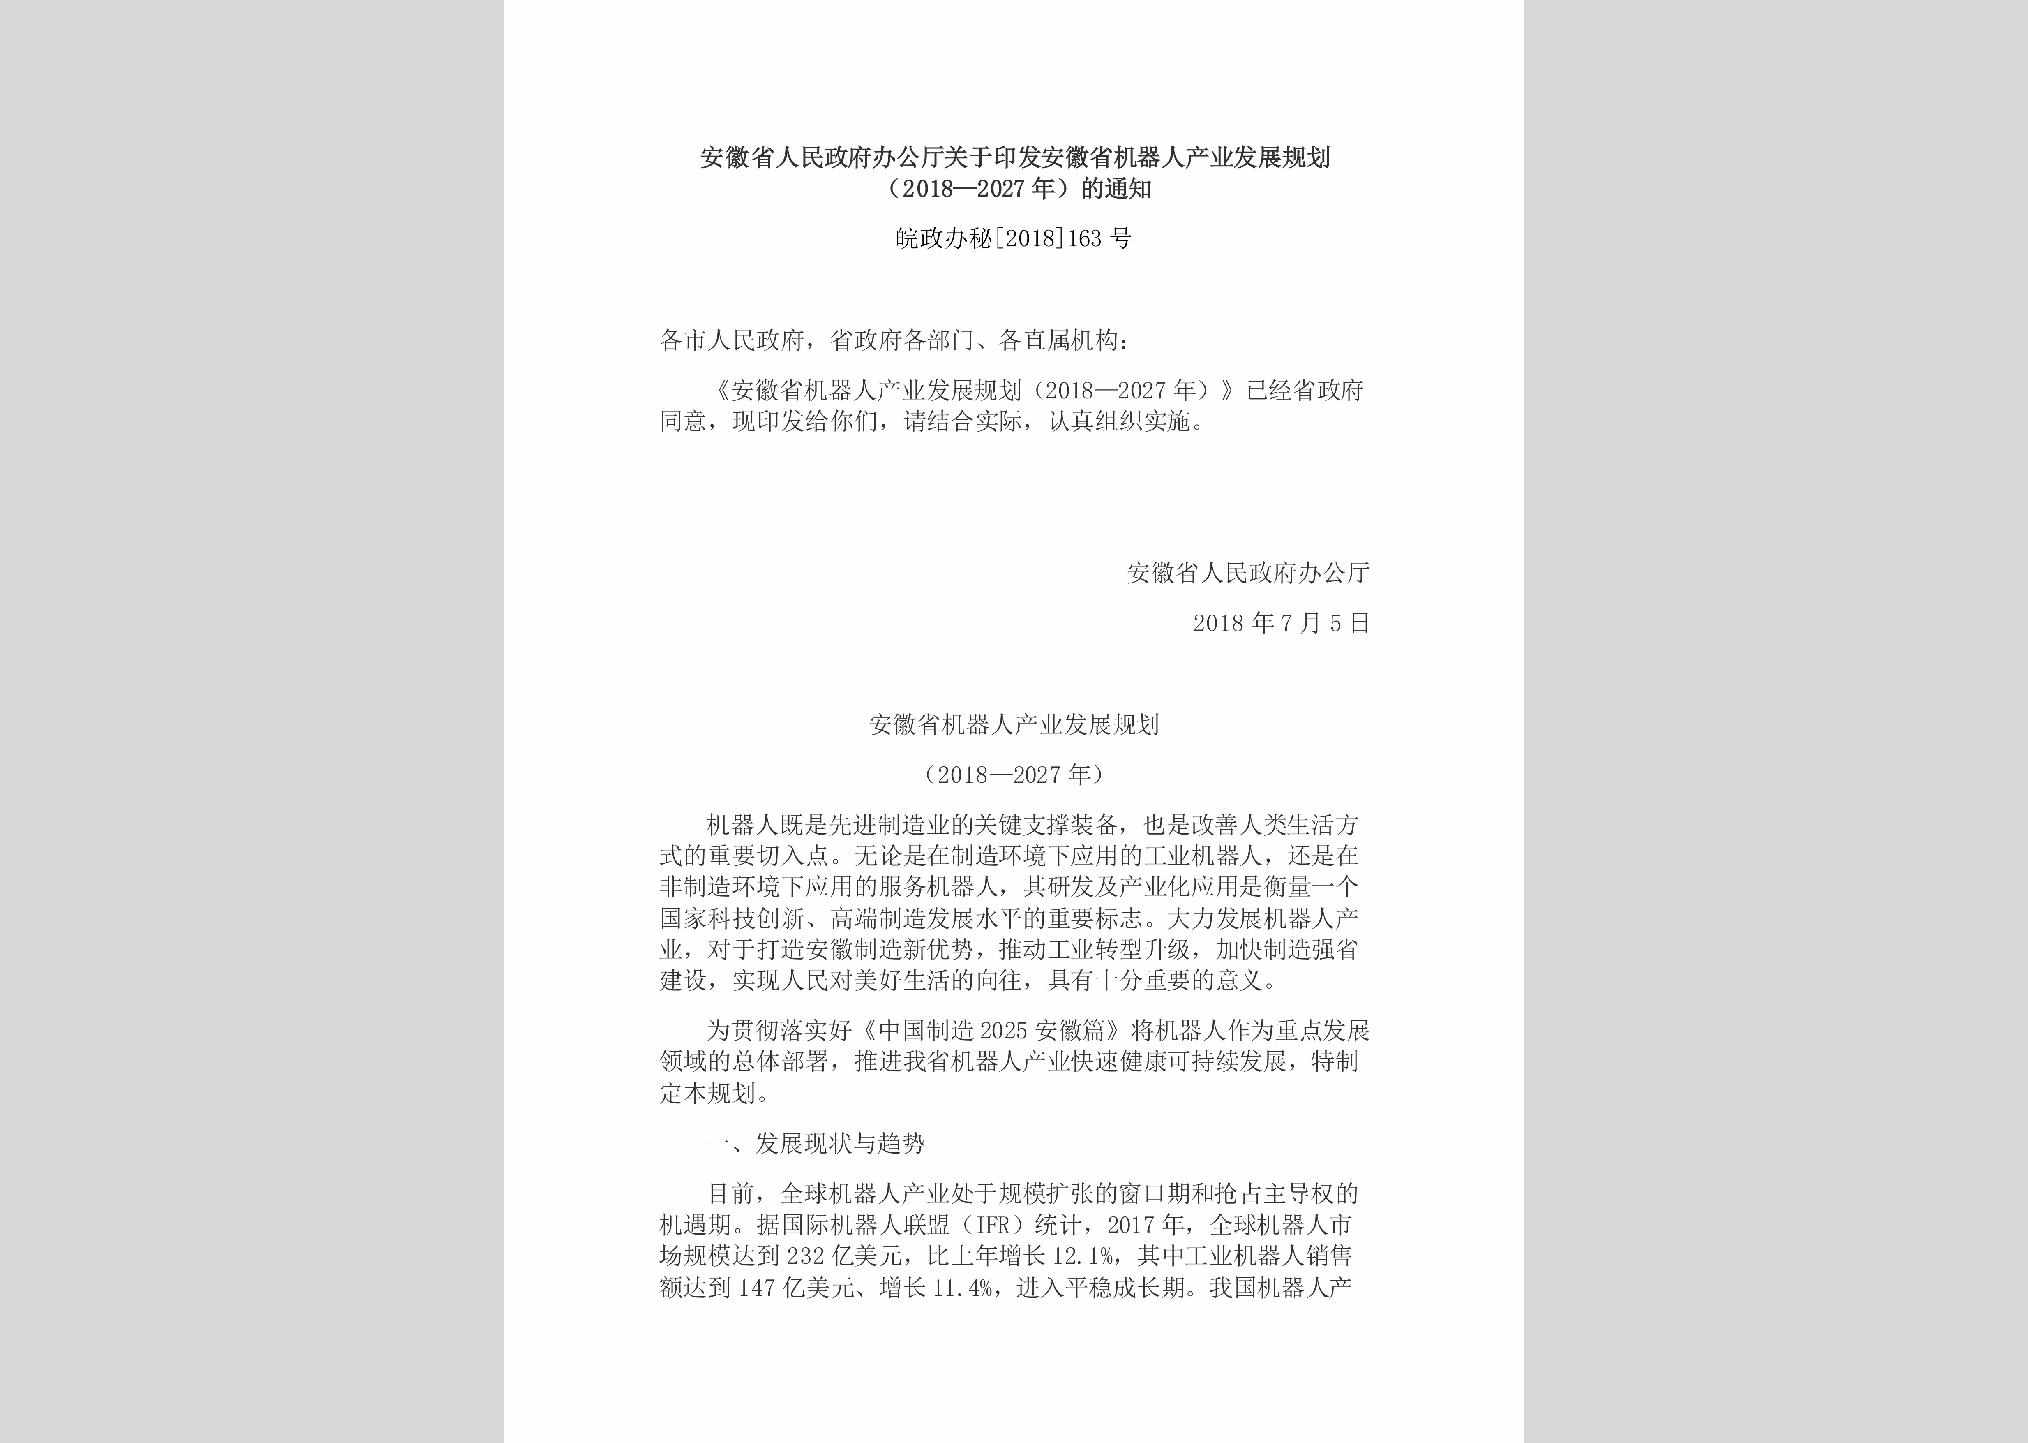 皖政办秘[2018]163号：安徽省人民政府办公厅关于印发安徽省机器人产业发展规划（2018—2027年）的通知